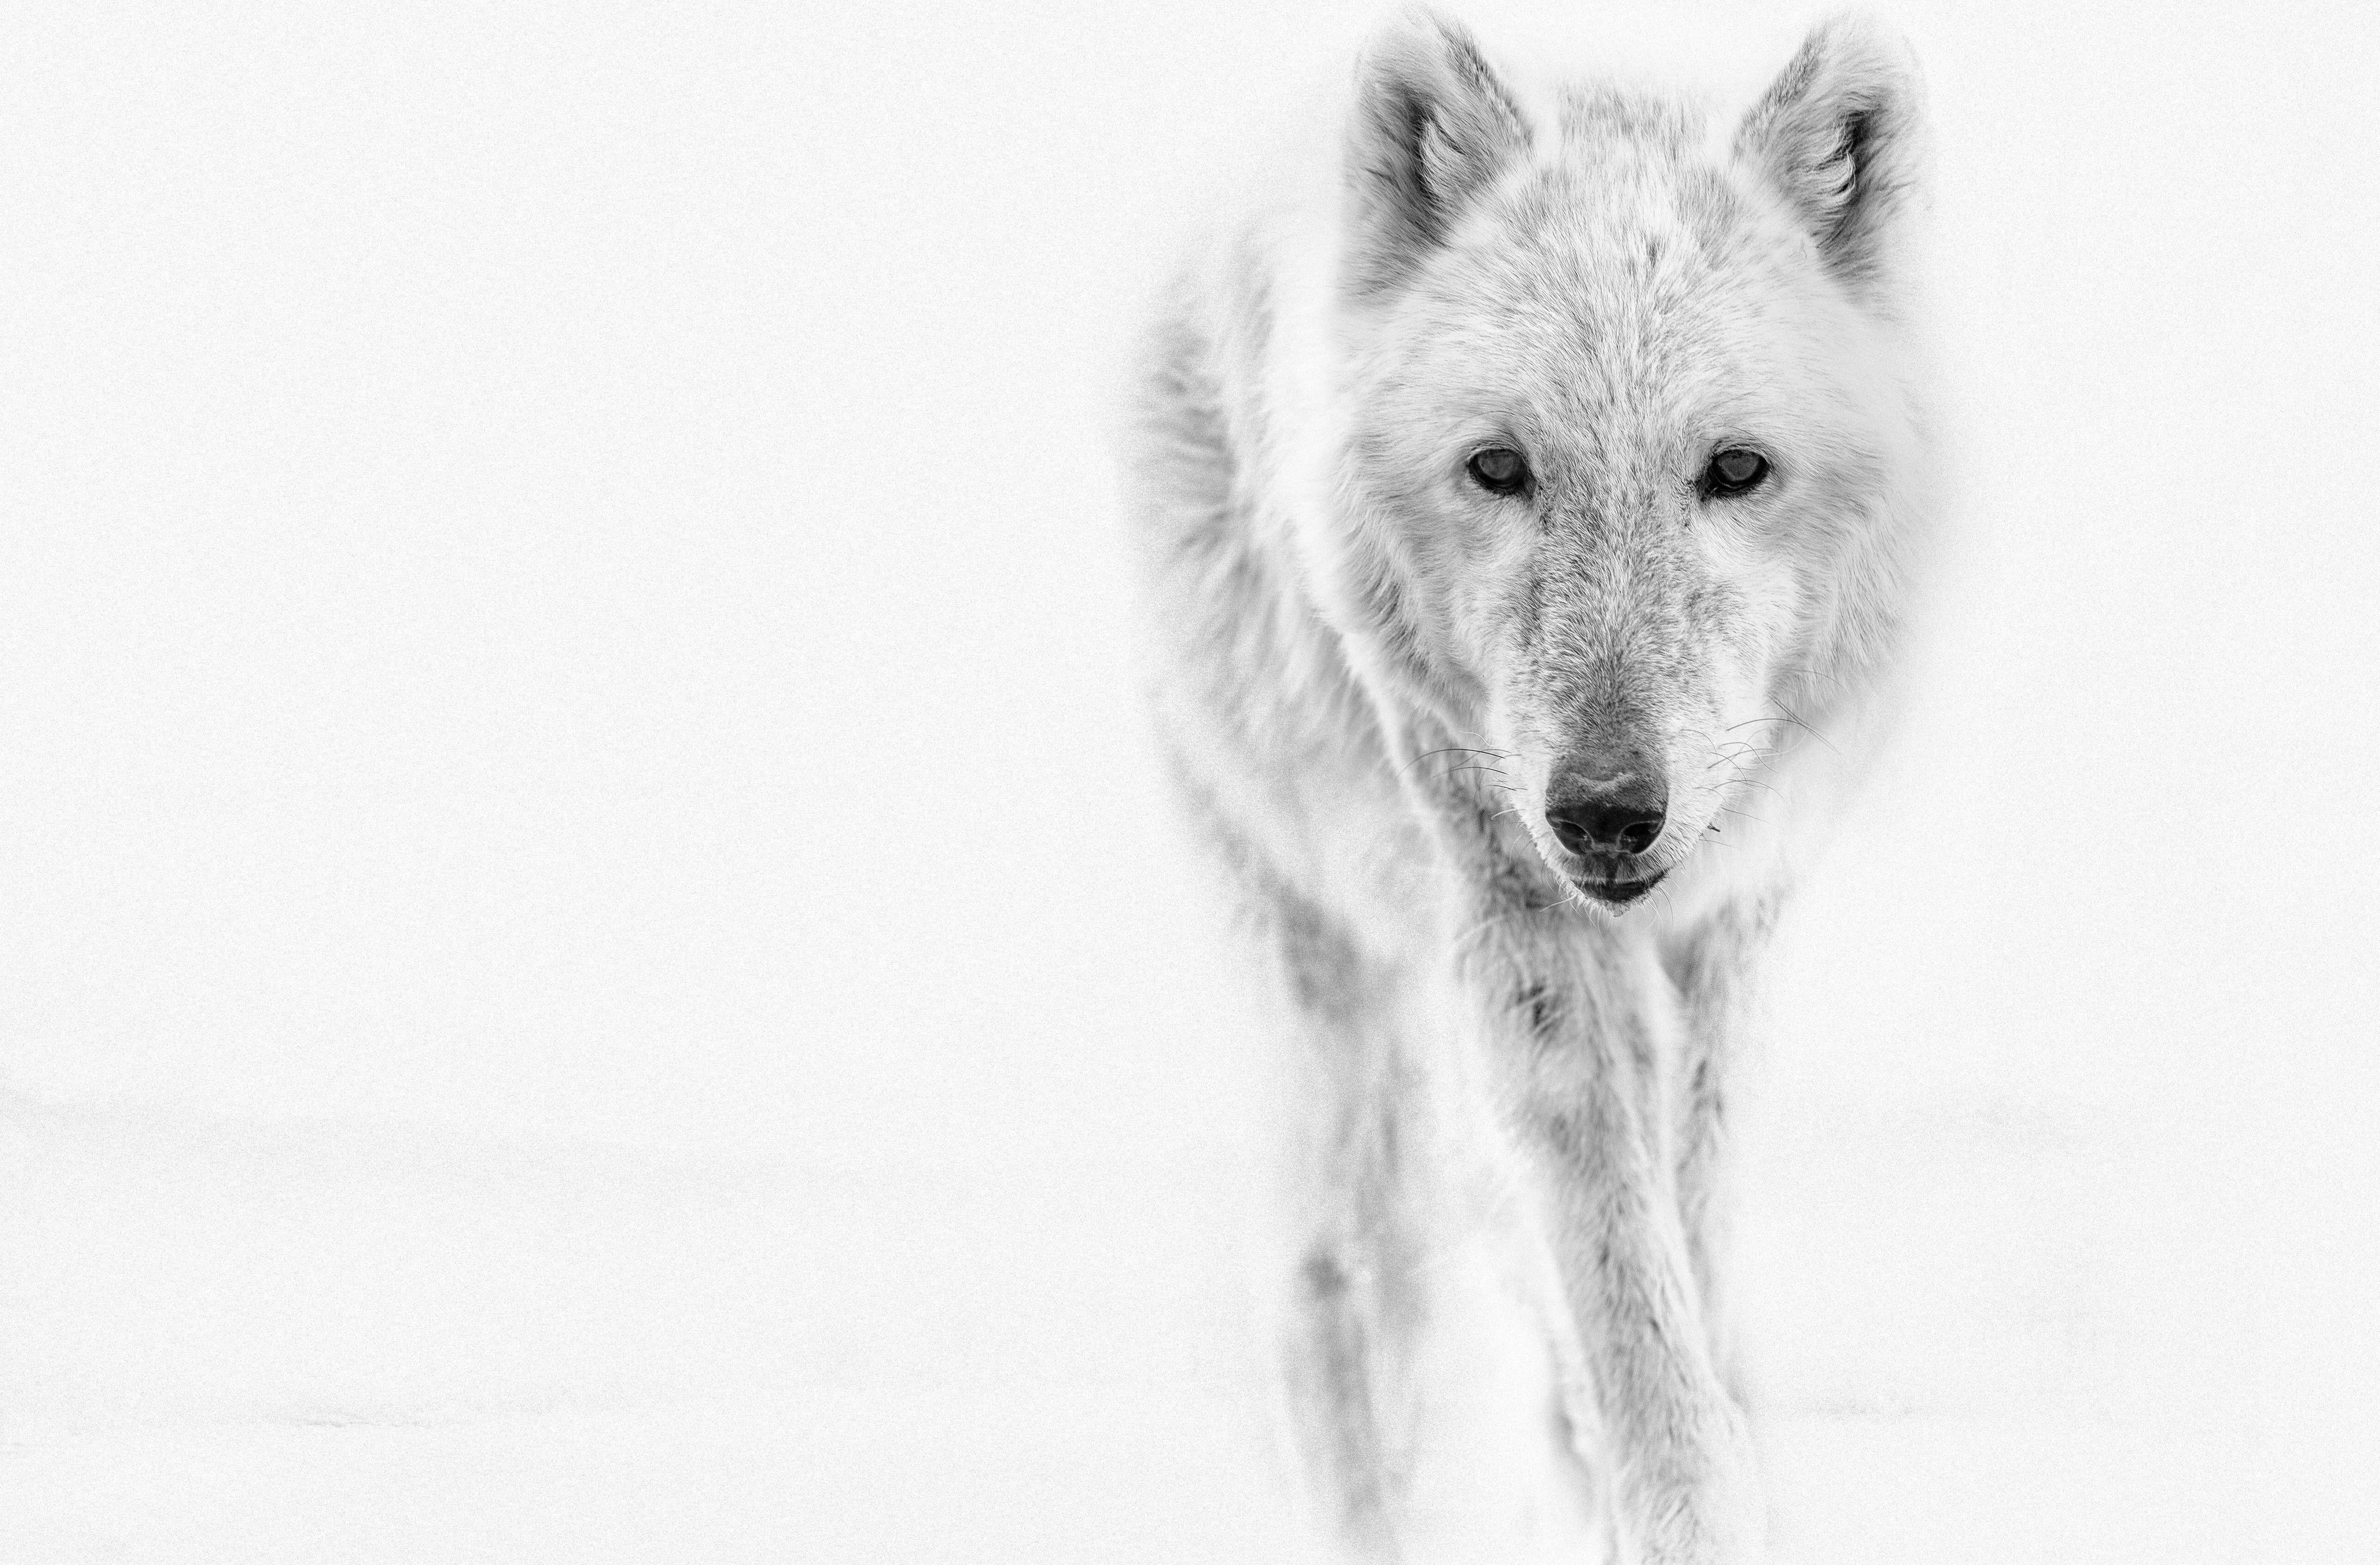 Animal Print Shane Russeck - "Le loup arctique" 28 x 40  Photographie noir et blanc, Photographie d'art Wolves